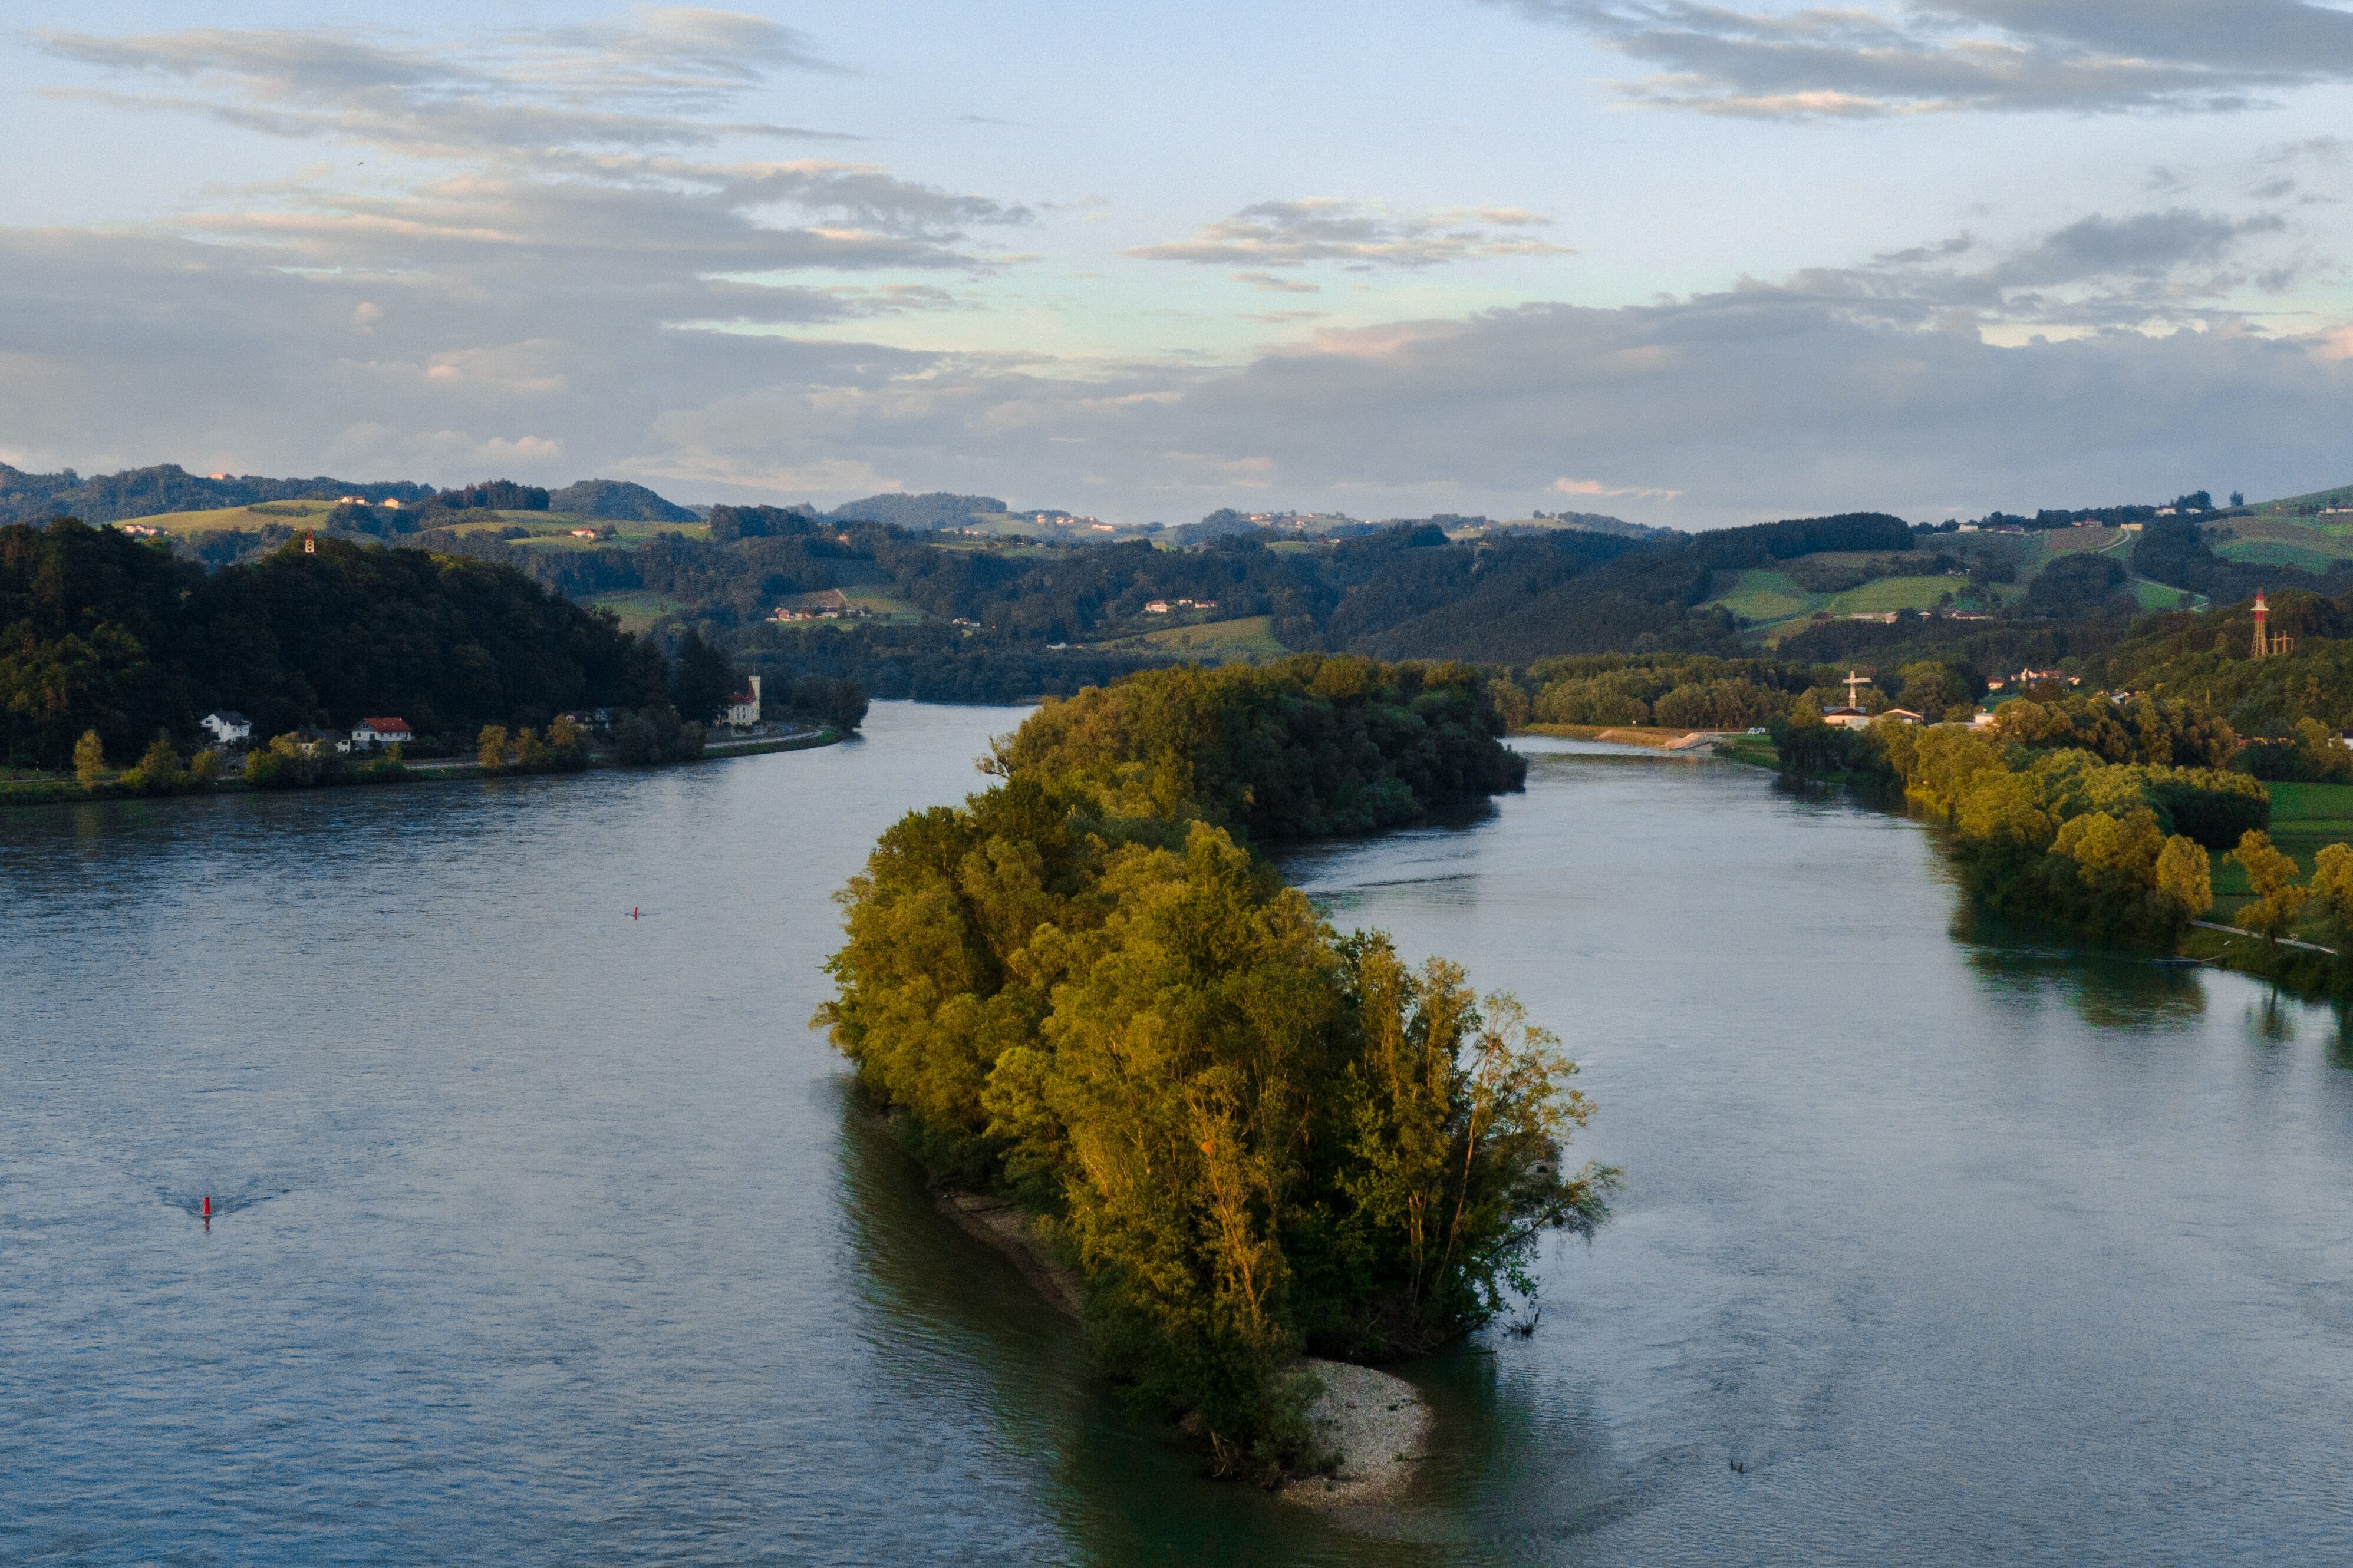 Am Beispiel des Vielstaatenflusses Donau ermittelten Forschende verschiedene Ökosystemleistungen für den aktuellen Status Quo des Flusses und seiner Auen sowie für zwei verschiedene Planungszustände. © Joachim Pressl | Unsplash